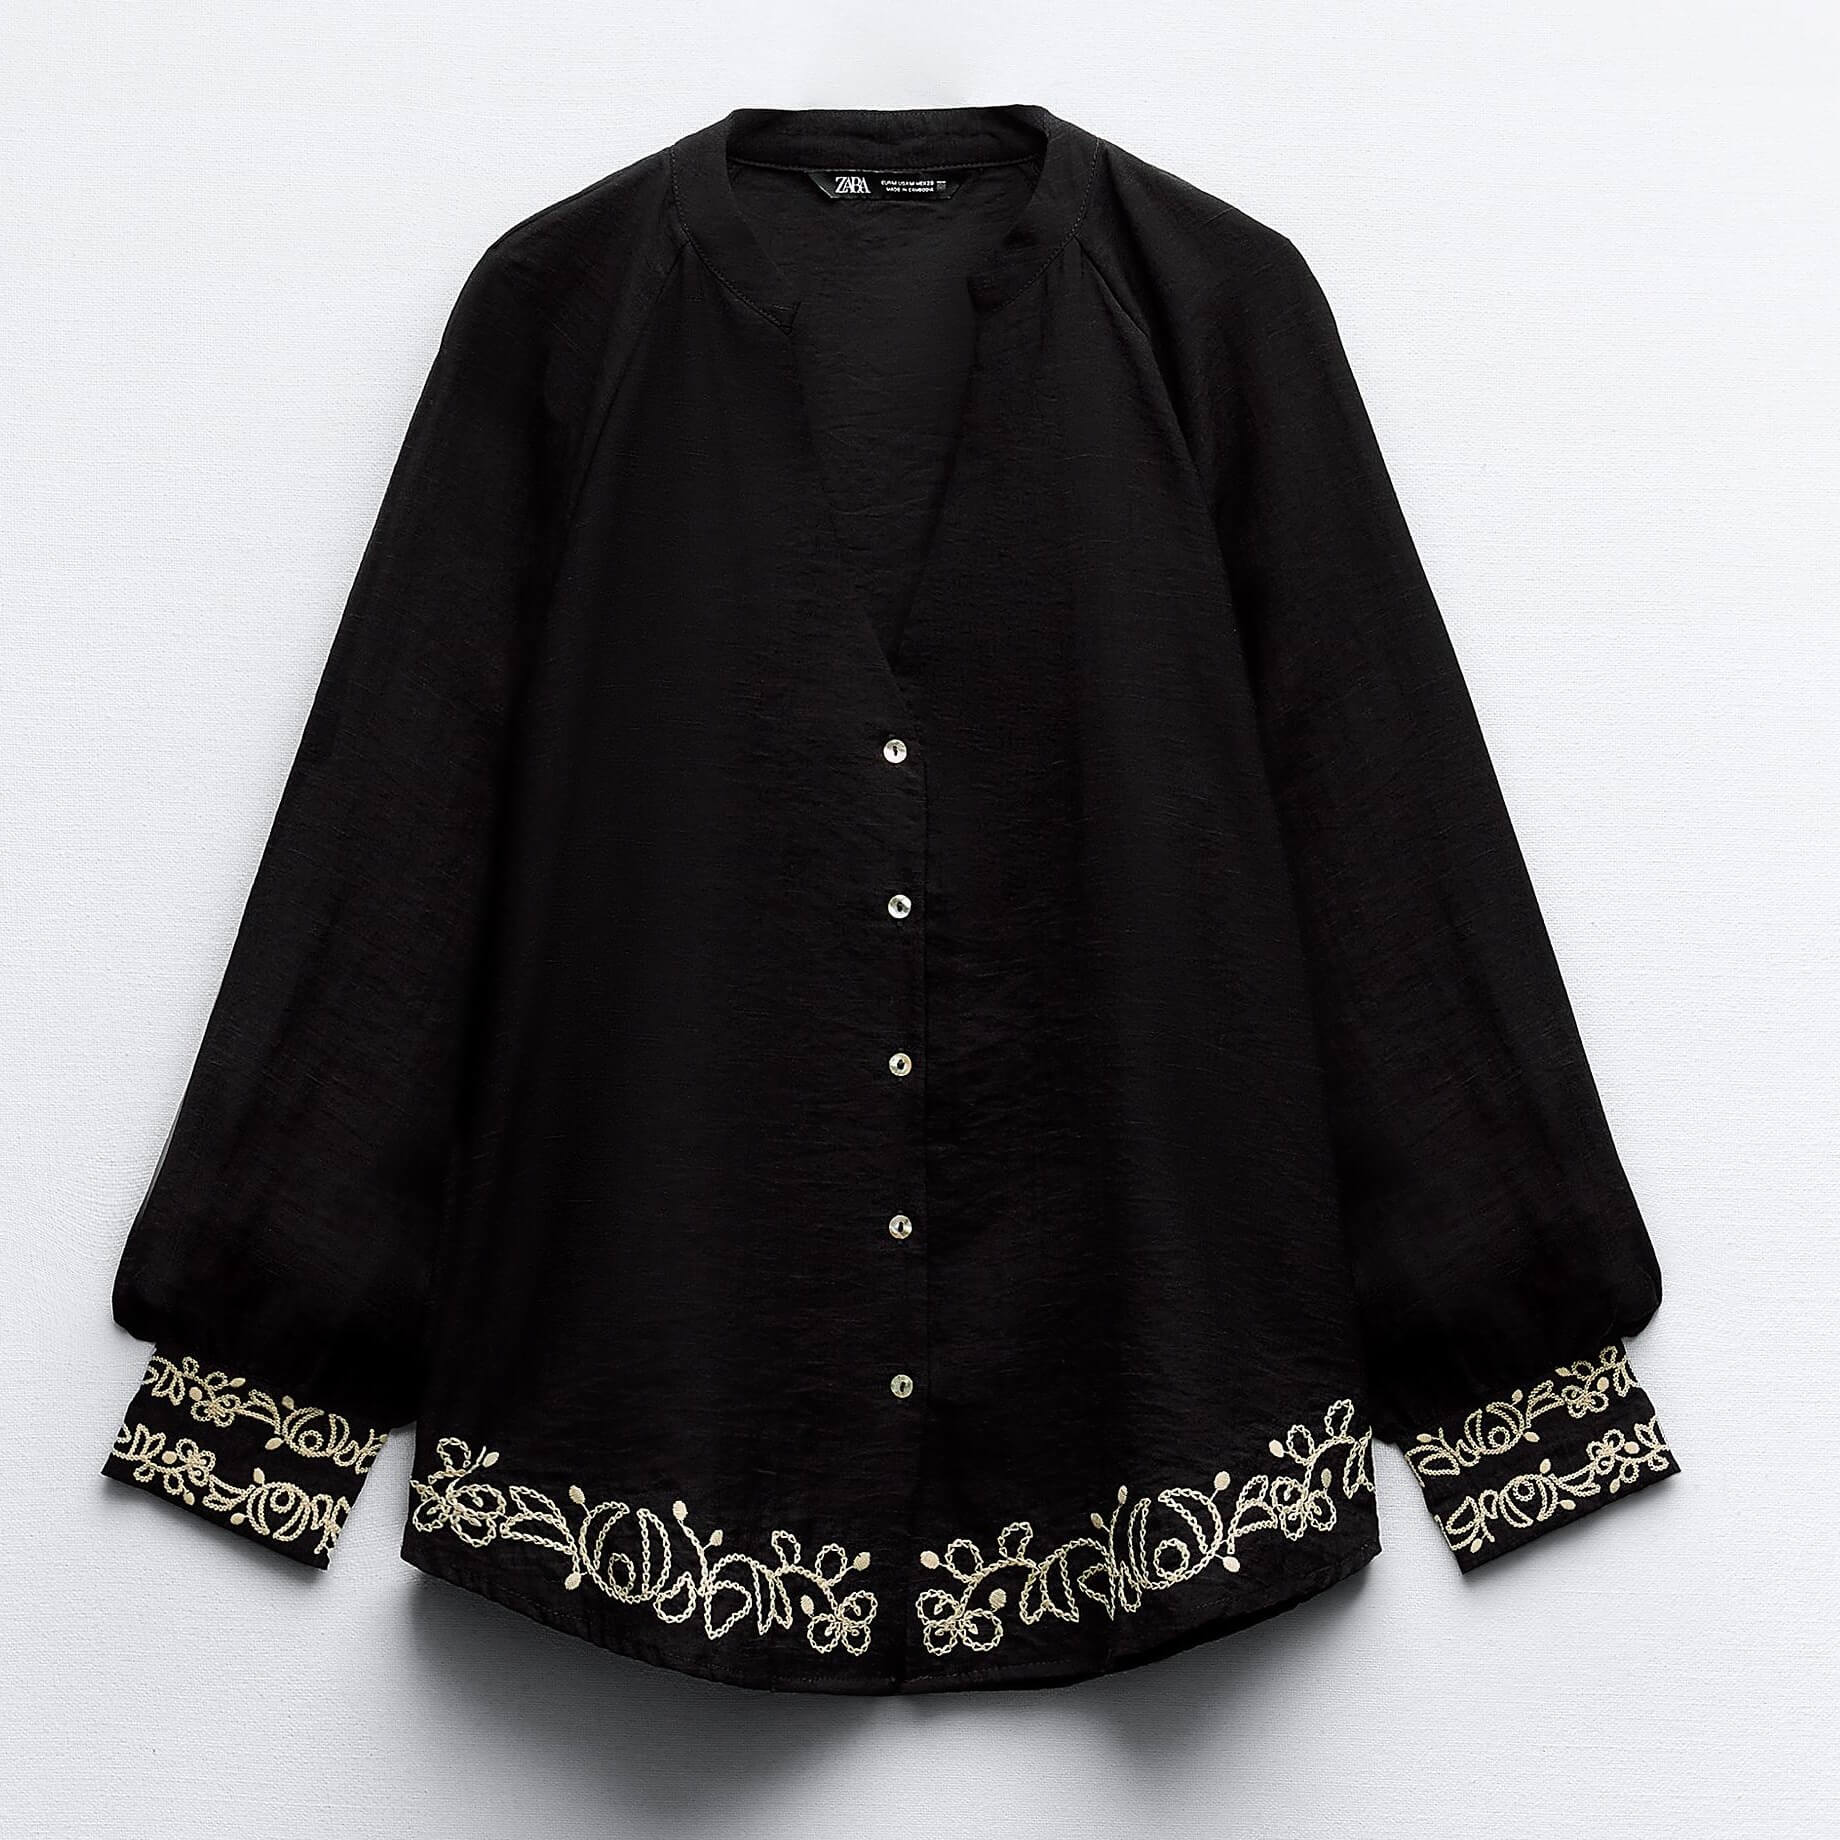 Блузка Zara With Combined Embroidery, черный рубашка мужская однотонная с отложным воротником люксовая приталенная деловая с вышивкой с длинными рукавами для встреч